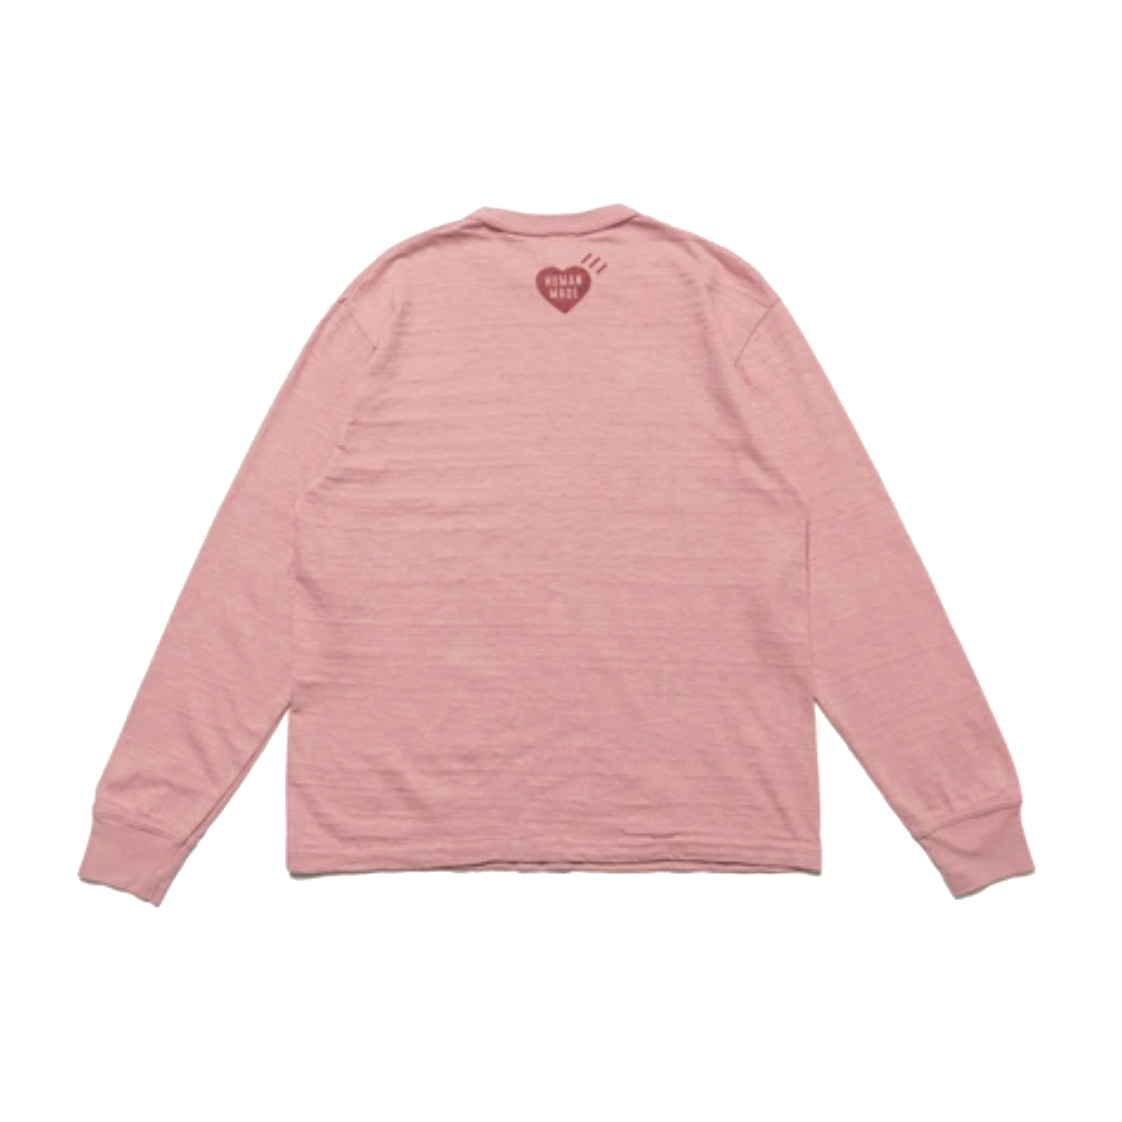 Human Made x Lil Uzi Vert L/S T-shirt Pink Men's - FW21 - US